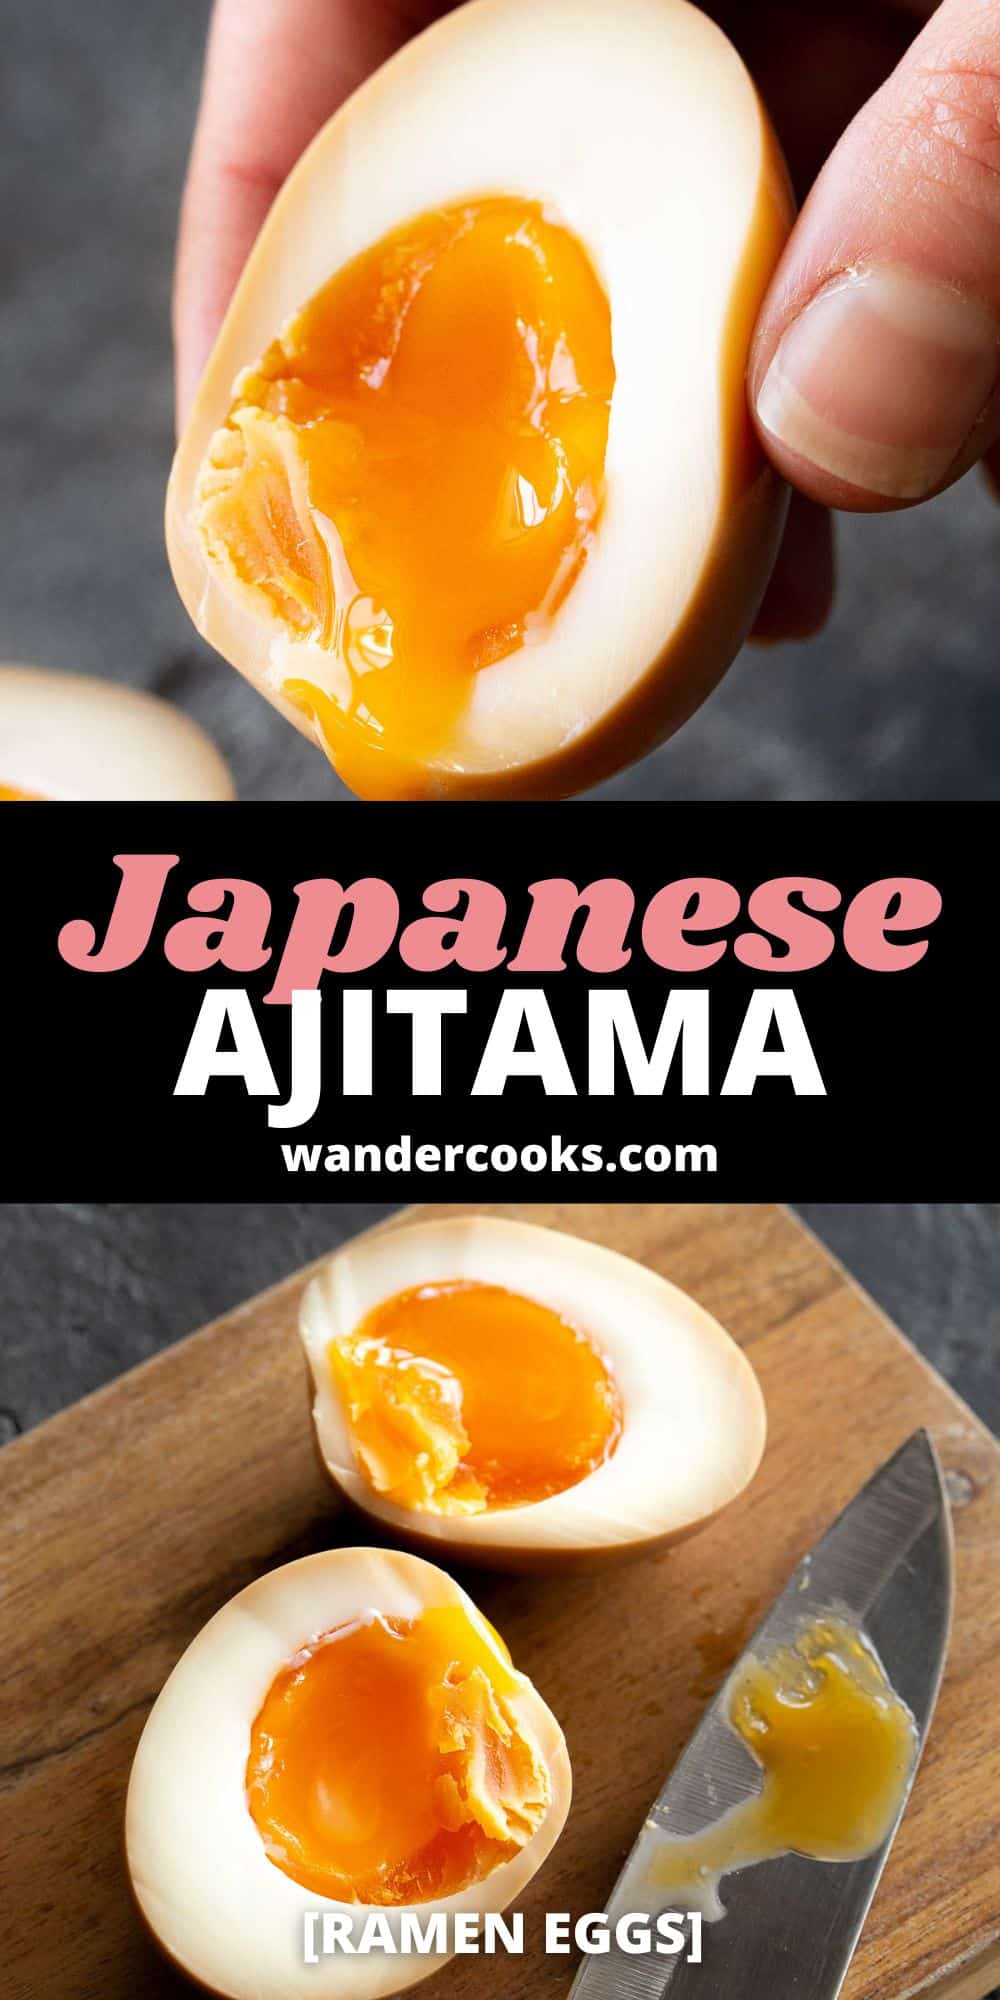 Ajitama - How to Make Eggs for Ramen